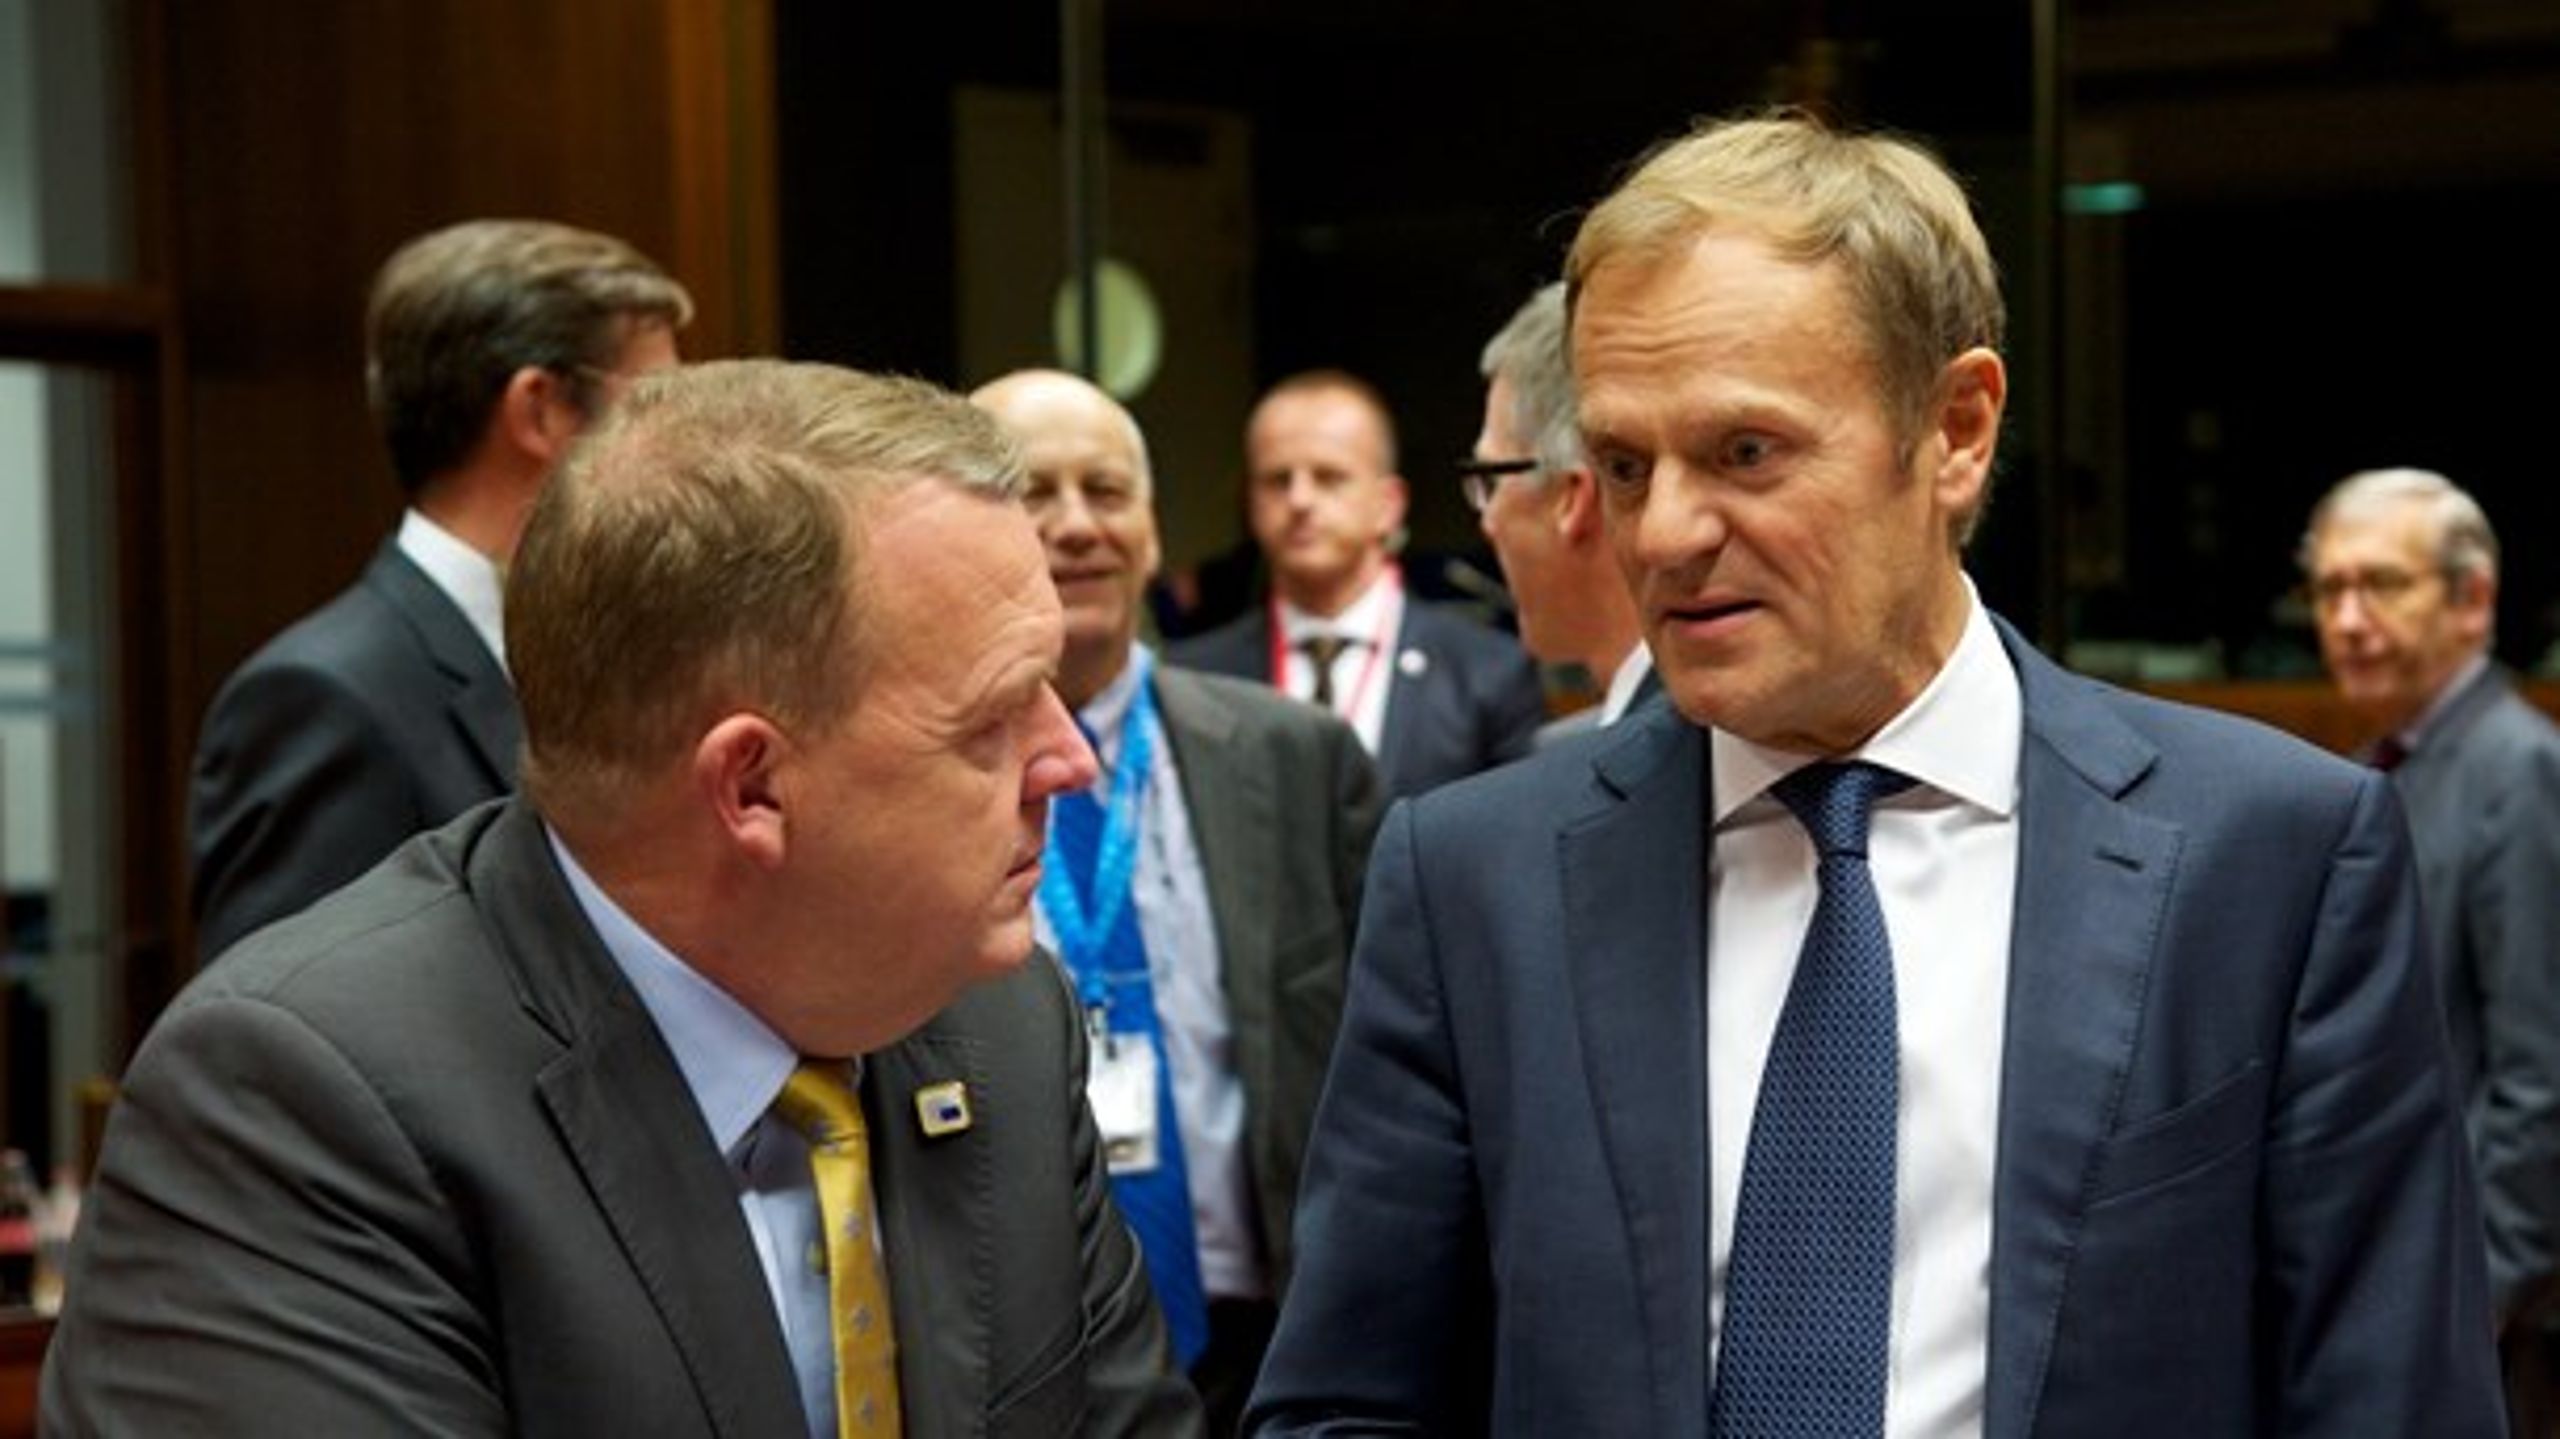 Statsminister Lars Løkke Rasmussen støtter varmt et nyt mandat til Donald Tusk som formand for Det Europæiske Råd.